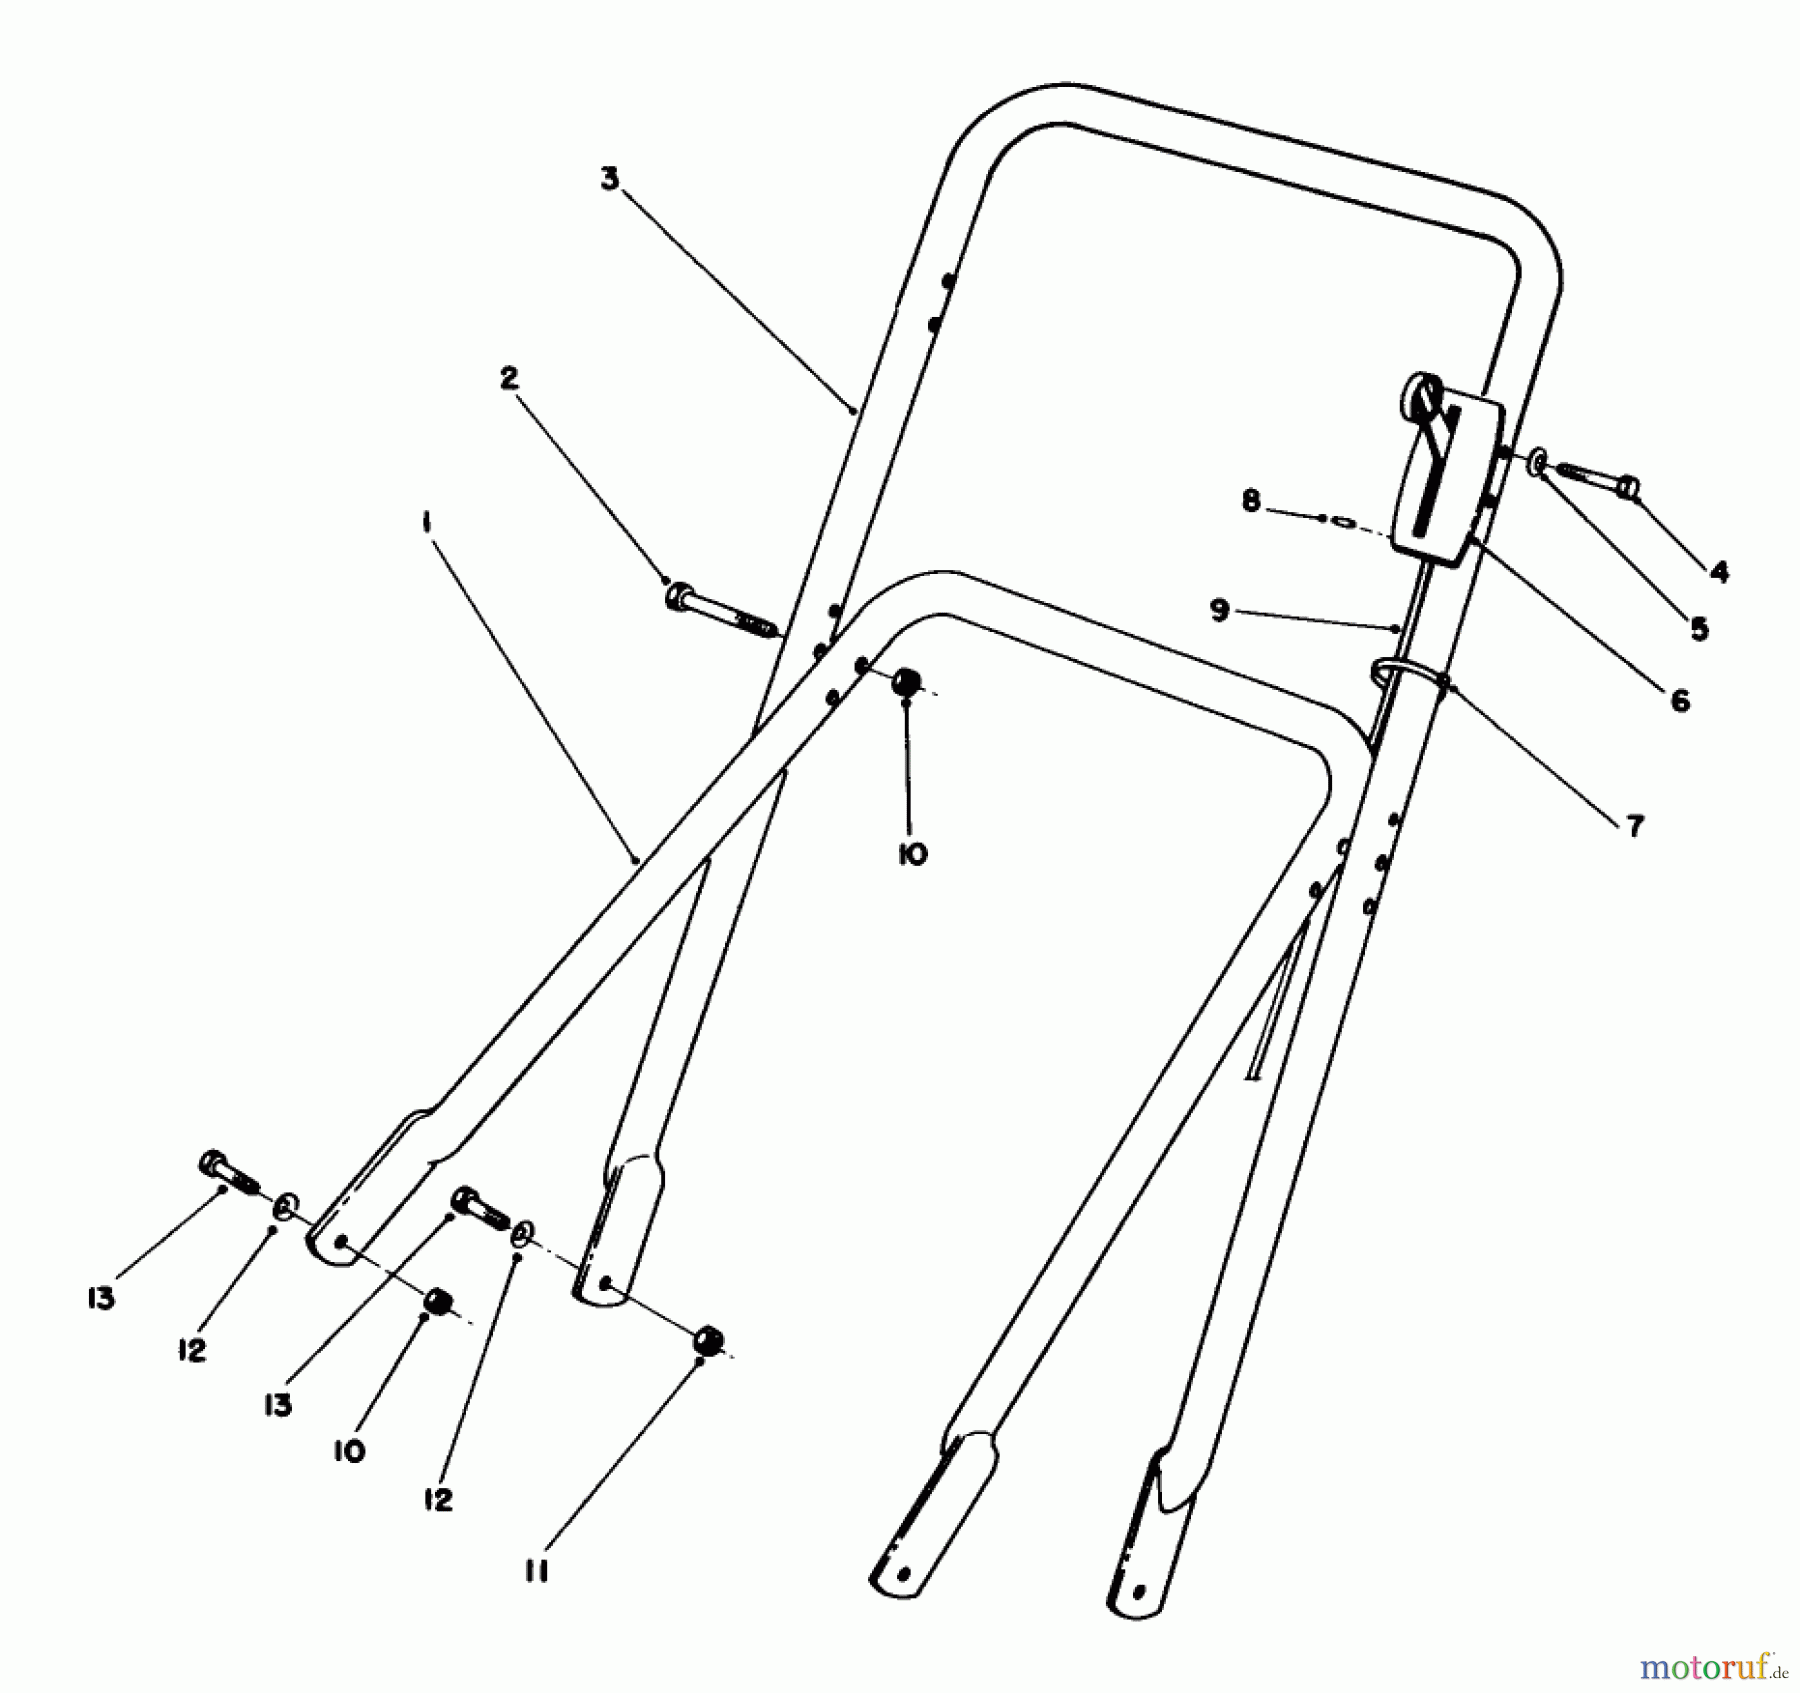  Toro Neu Mowers, Walk-Behind Seite 2 22710C - Toro Lawnmower, 1989 (SN 9900001-9999999) HANDLE ASSEMBLY